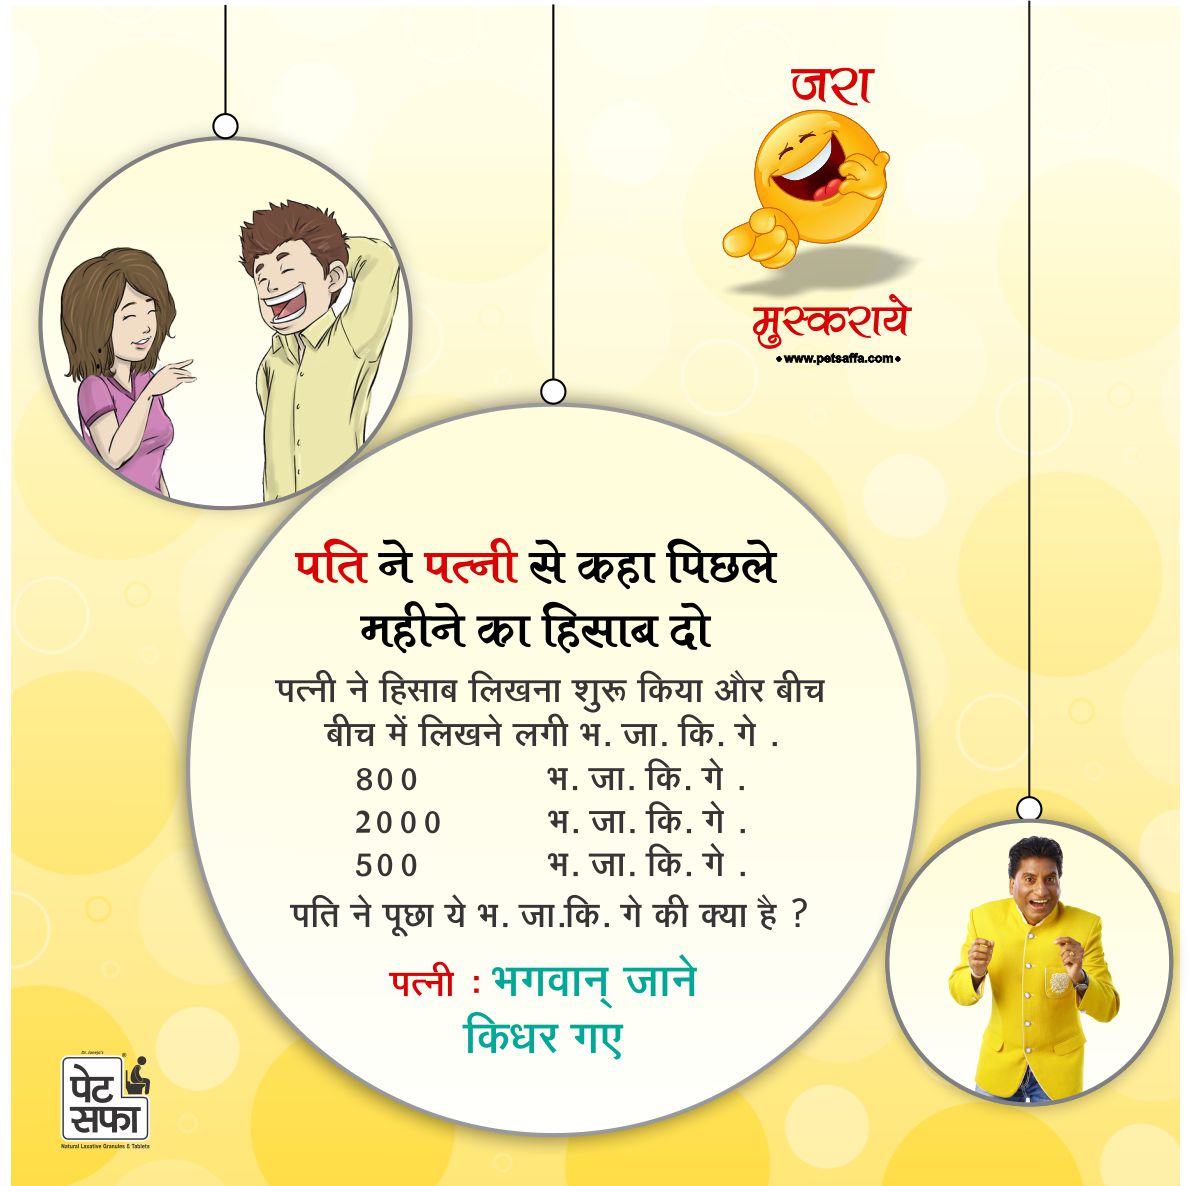 Pati Patni Hindi Jokes-पति पत्नी के जोक्स हिंदी में - Funny Jokes on  Husband Wife